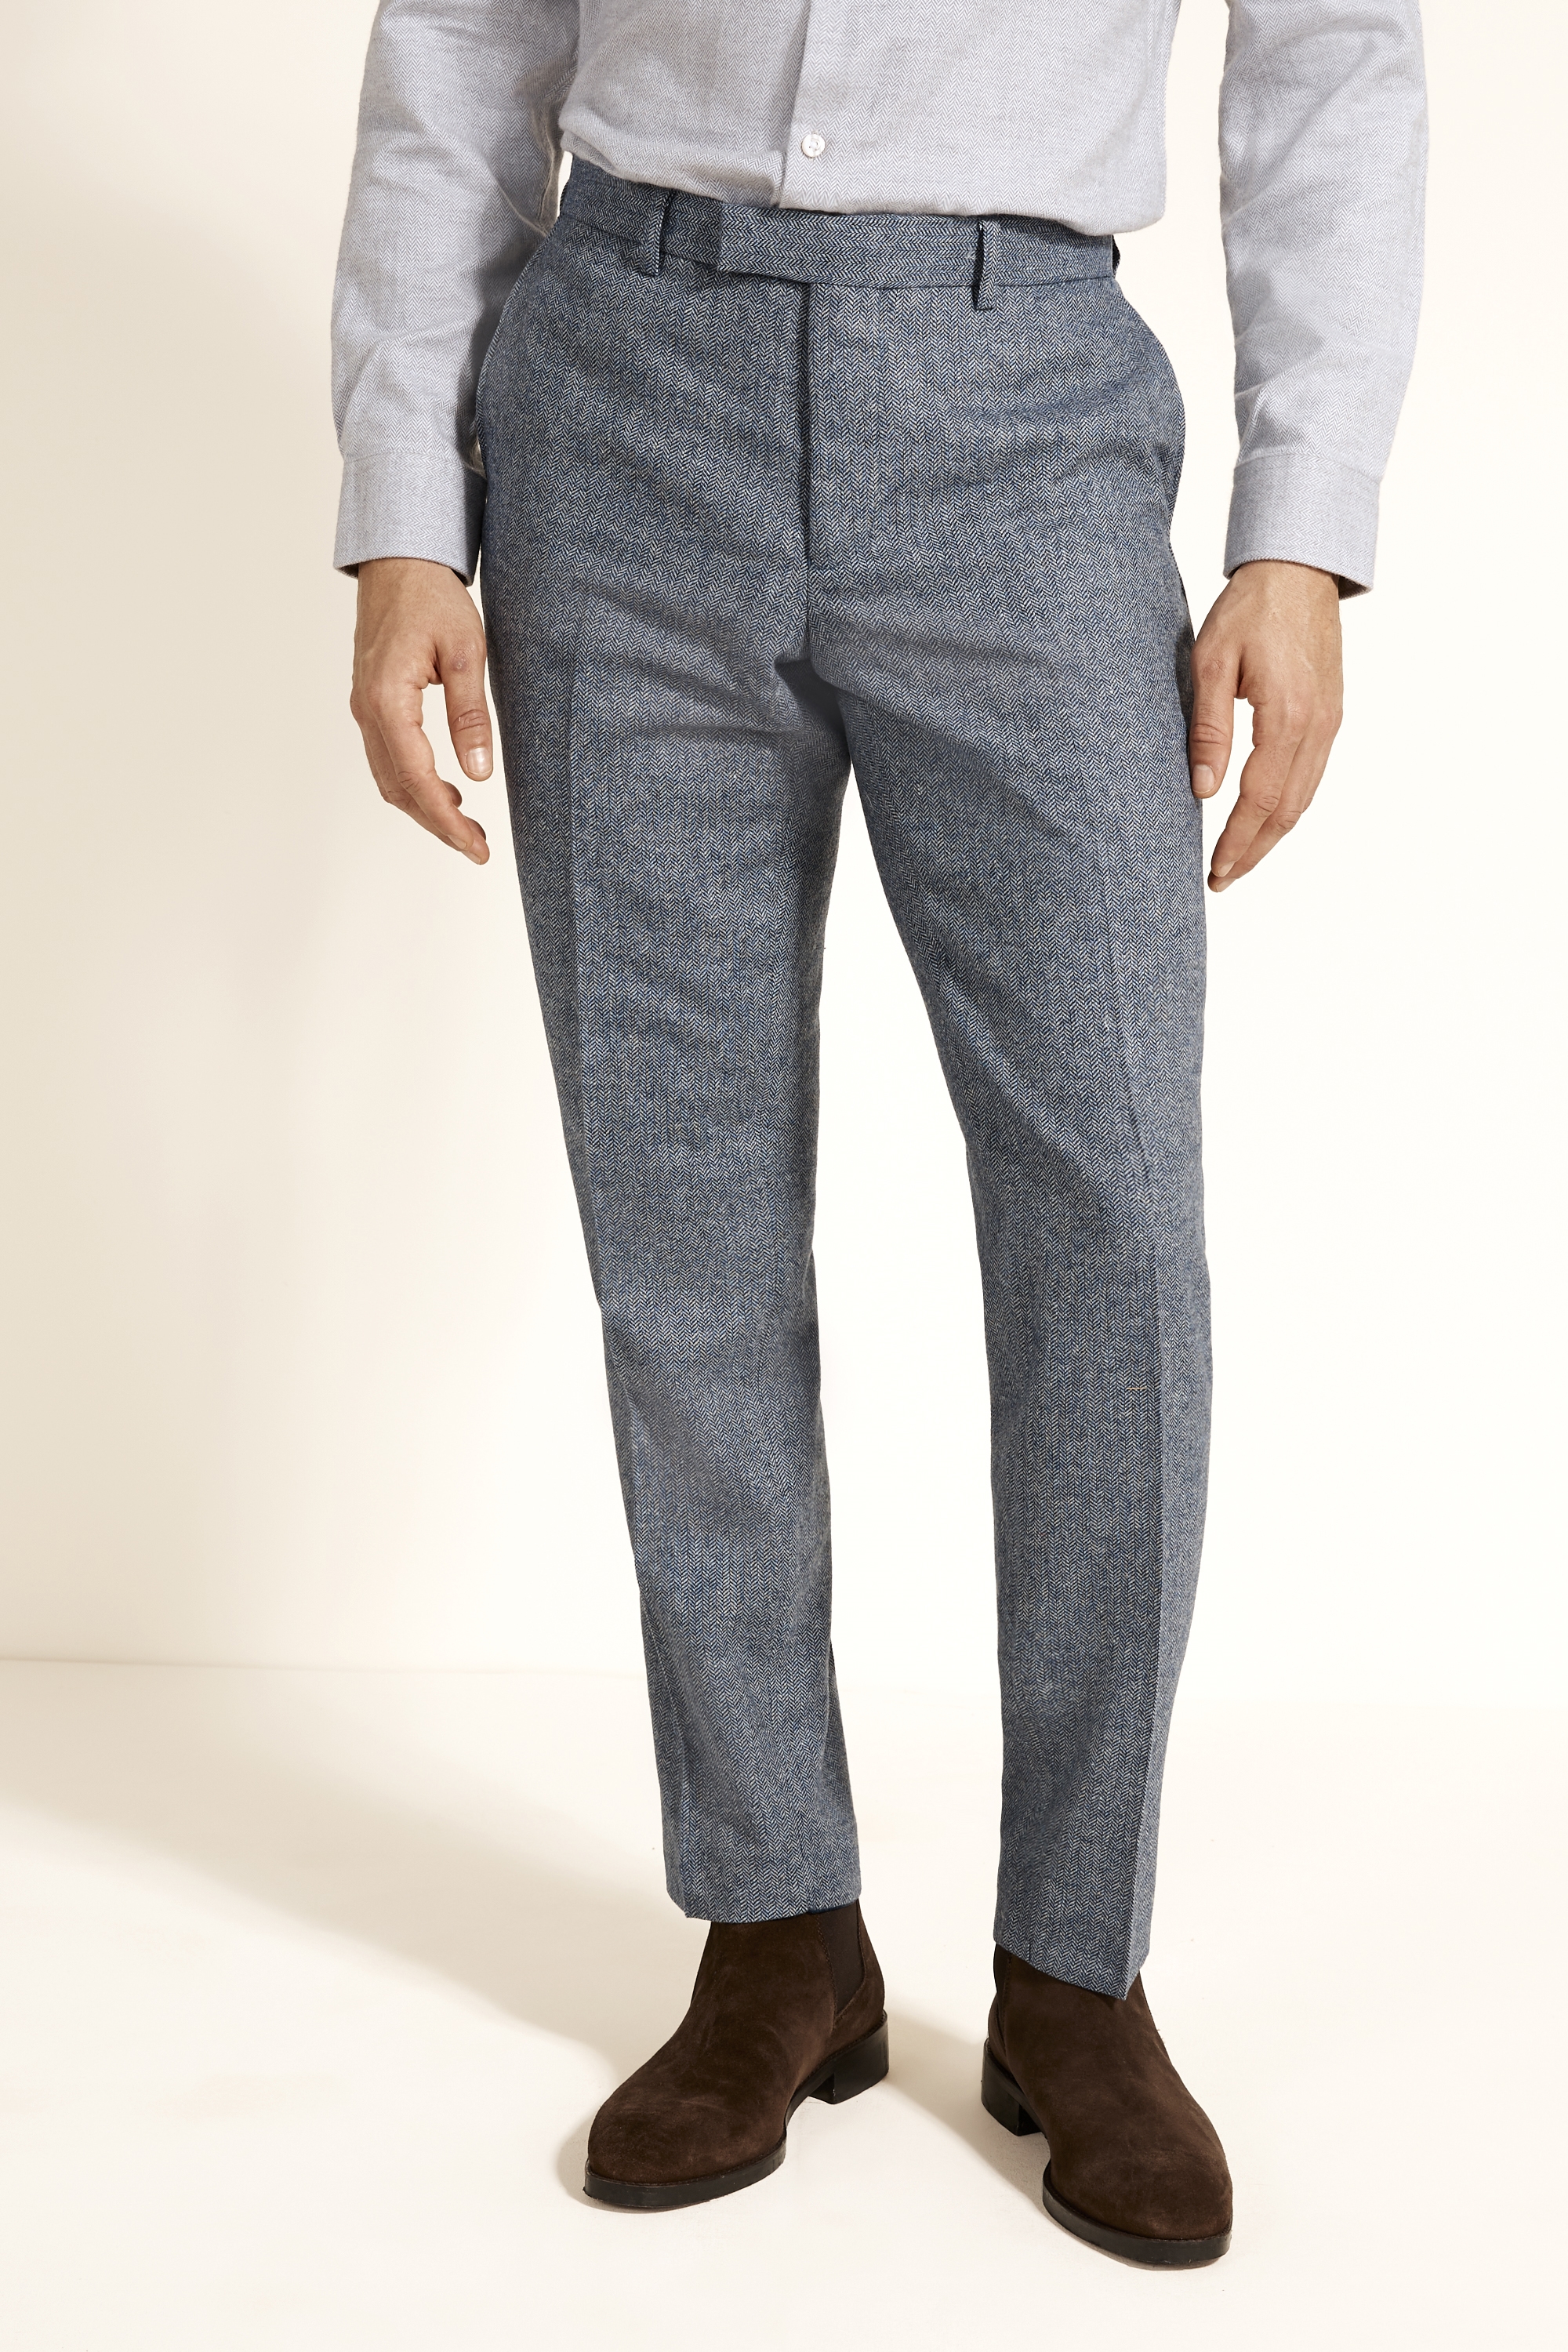 Slim Fit Blue Herringbone Tweed Trousers | Buy Online at Moss